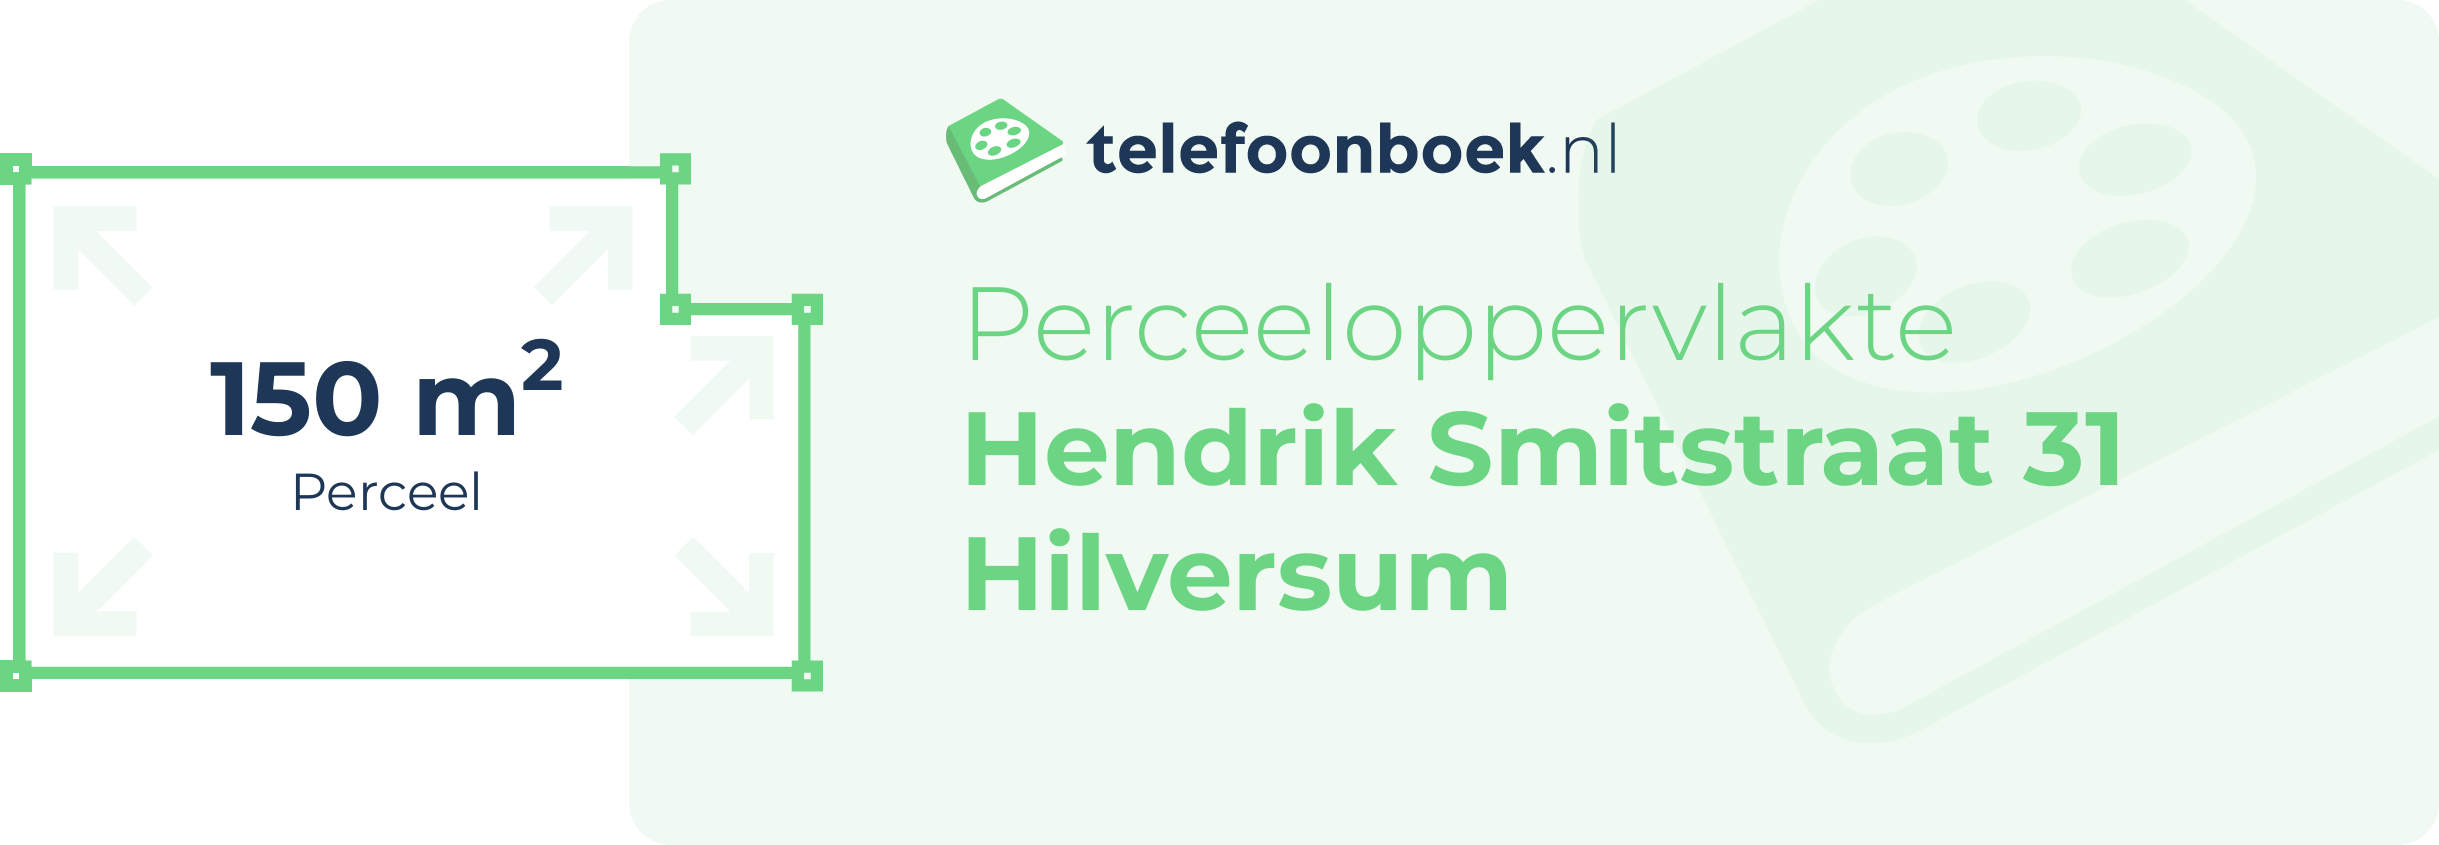 Perceeloppervlakte Hendrik Smitstraat 31 Hilversum